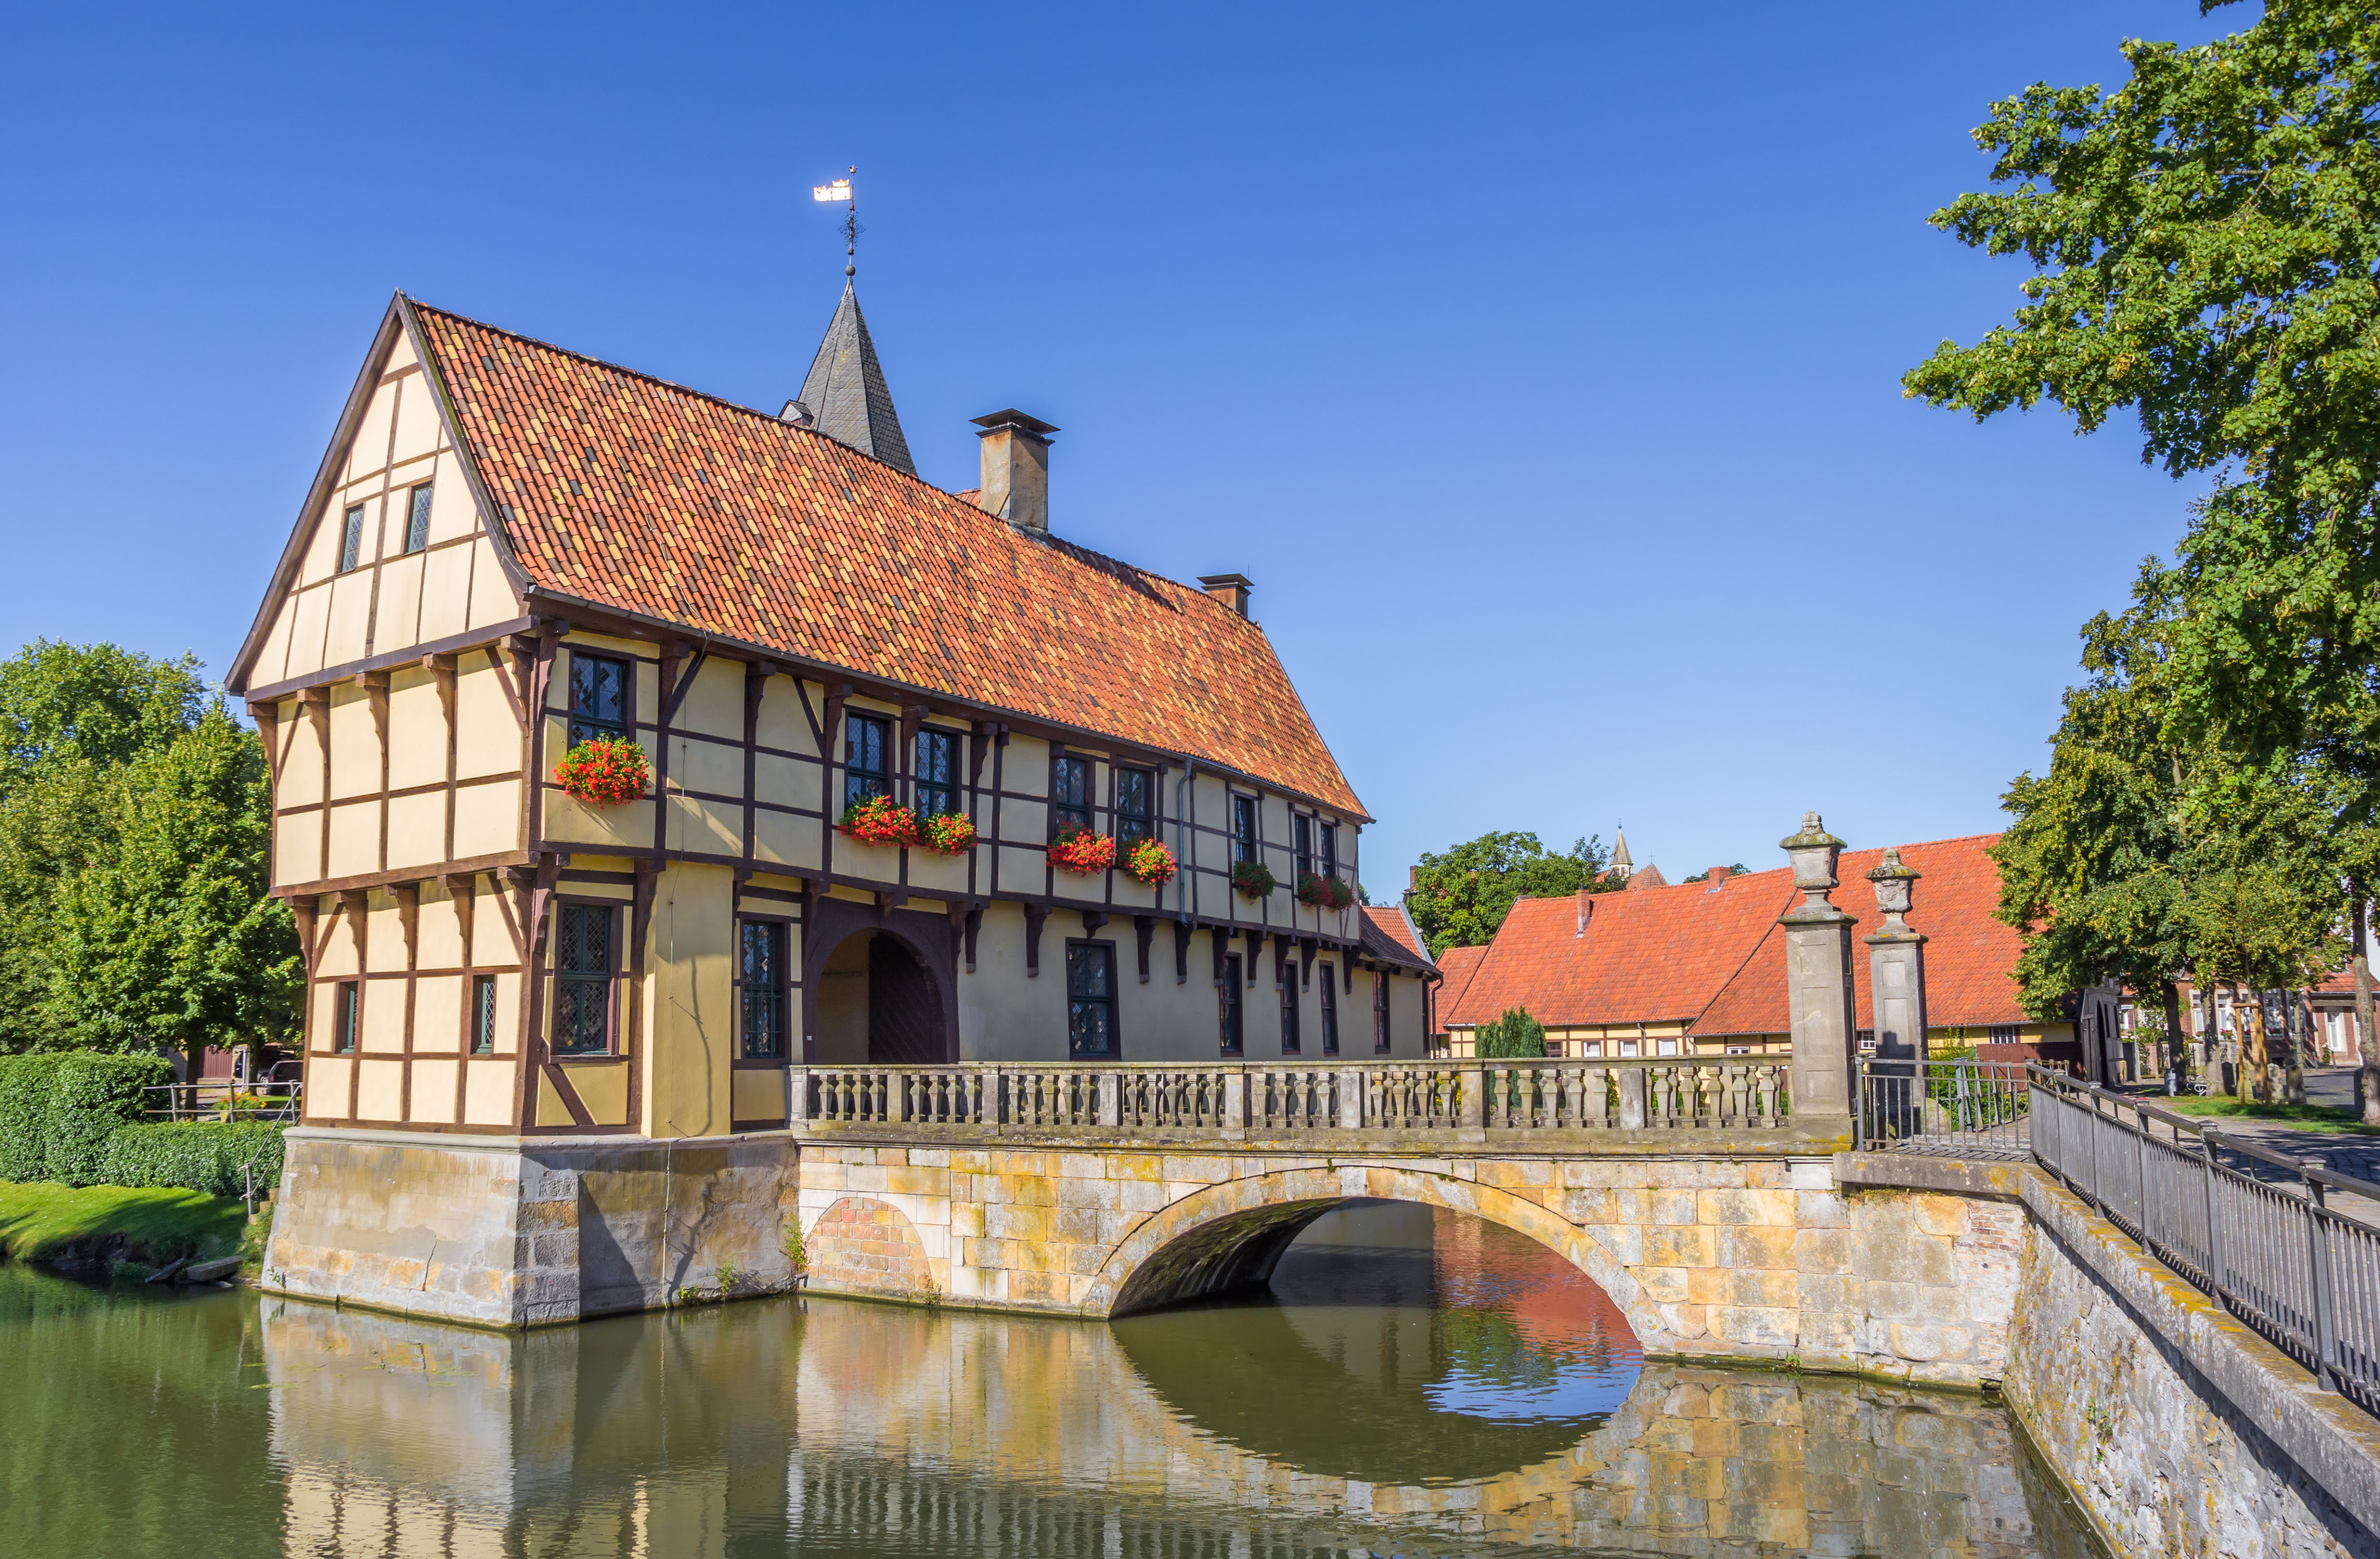 Ansicht der Stadt Steinfurt mit historischem Fachwerkhaus